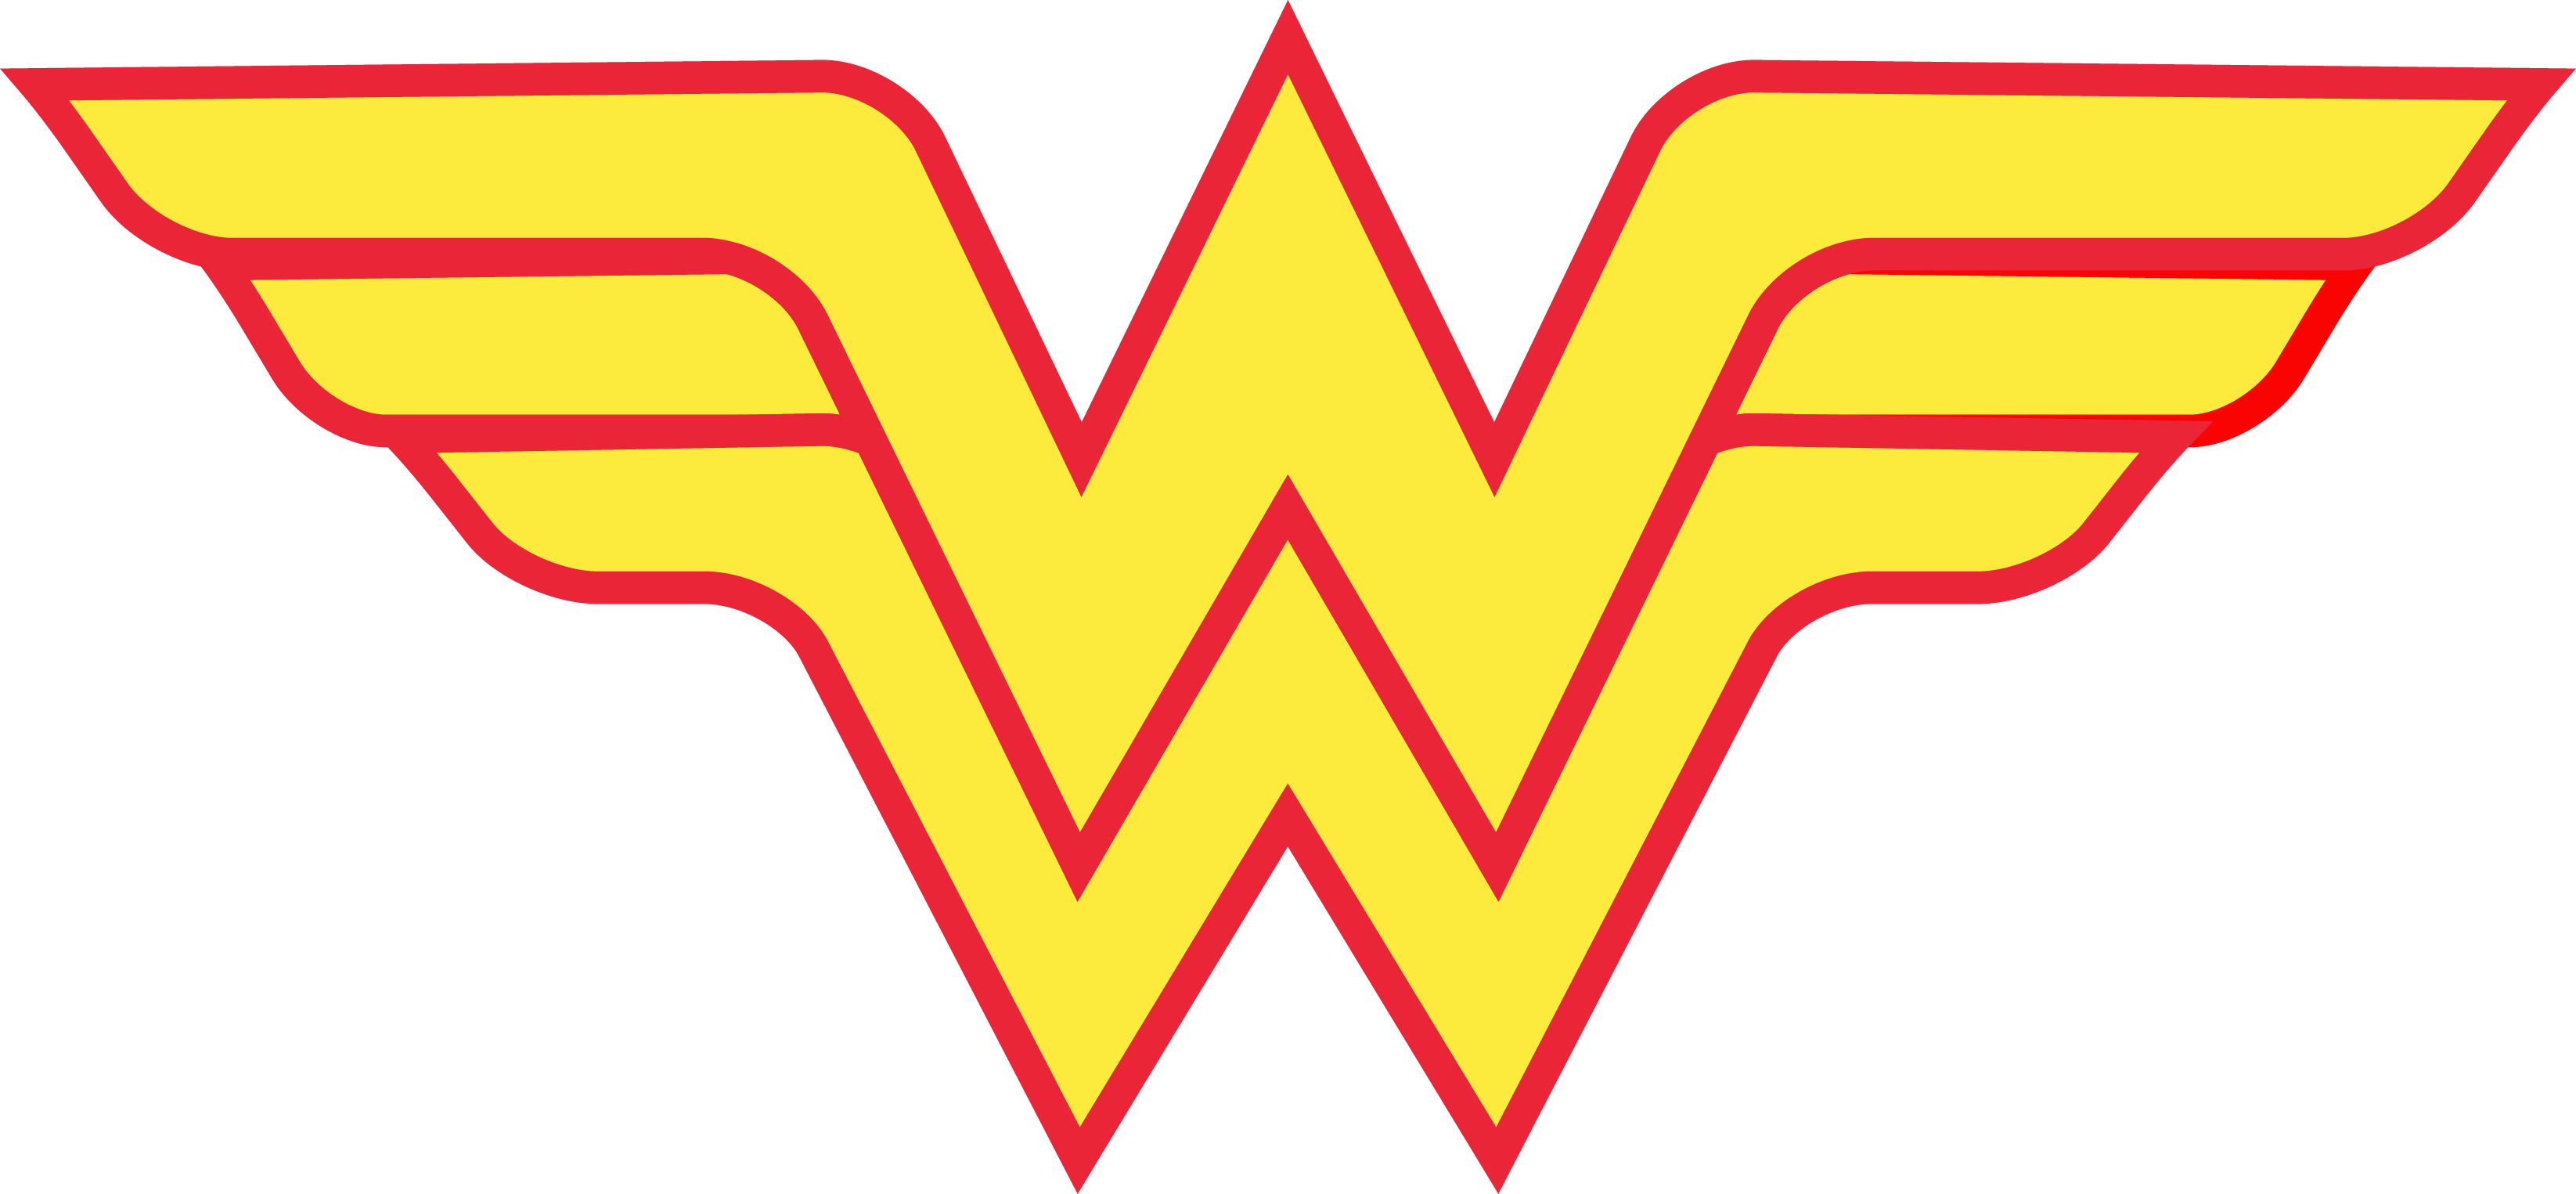 Wonder Woman Télécharger une image PNG Transparente